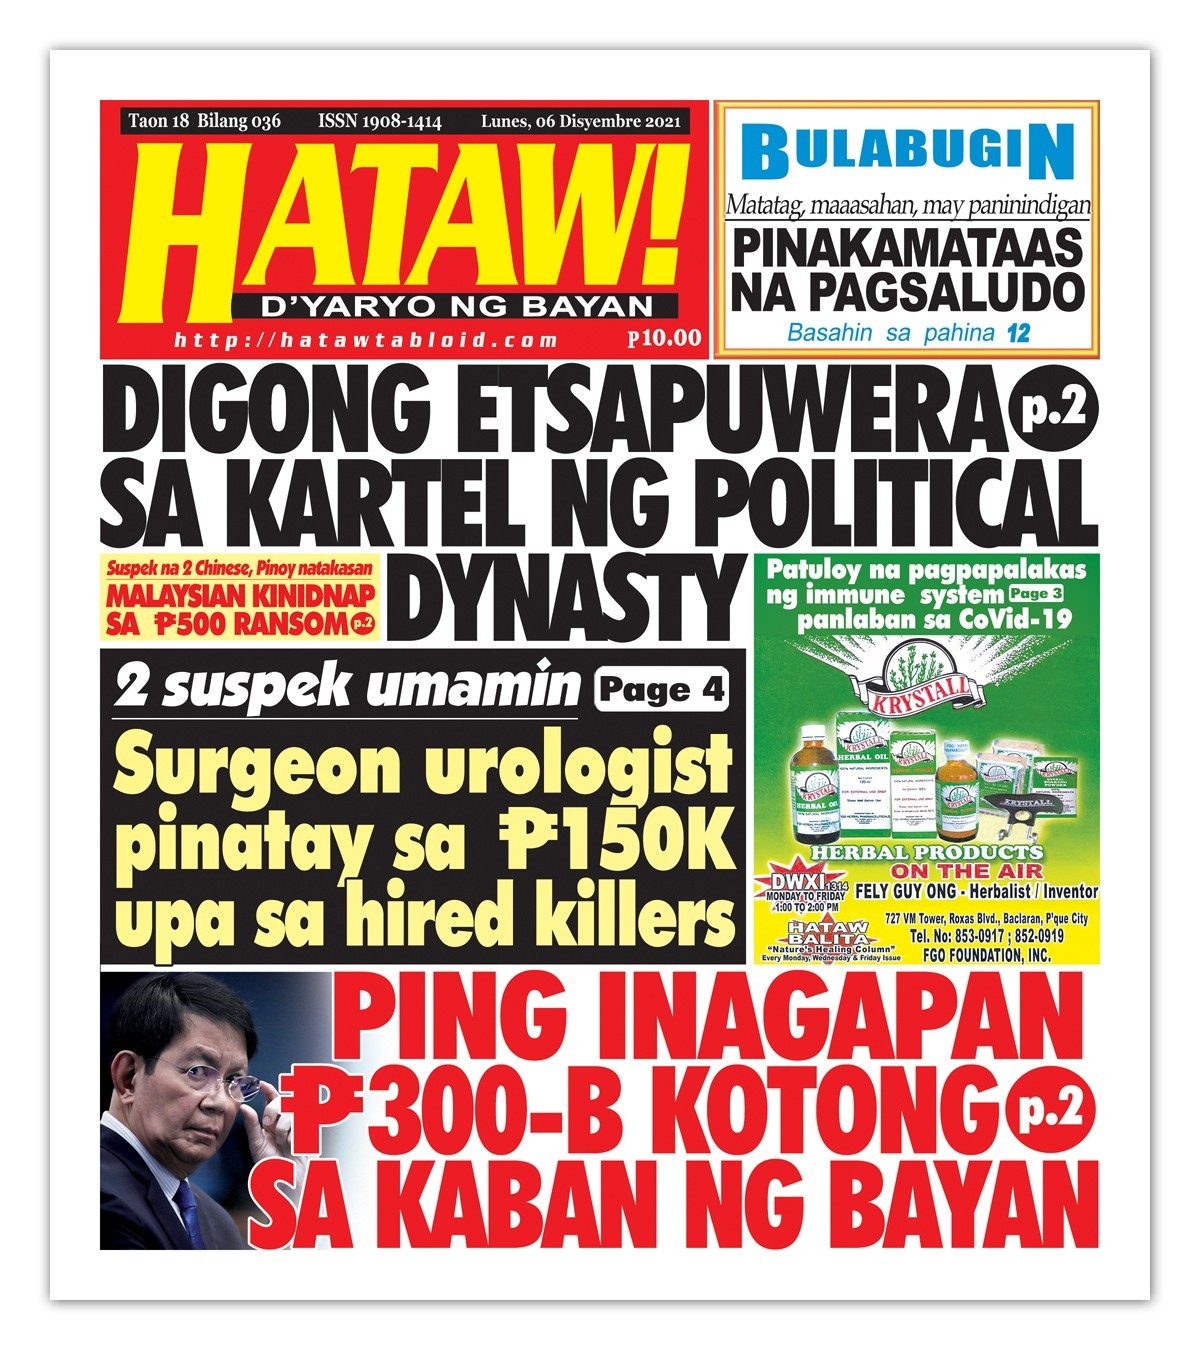 Hataw Frontpage Ping inagapan P300-B kotong sa kaban ng bayan Digong etsapuwera sa kartel ng political dynasty